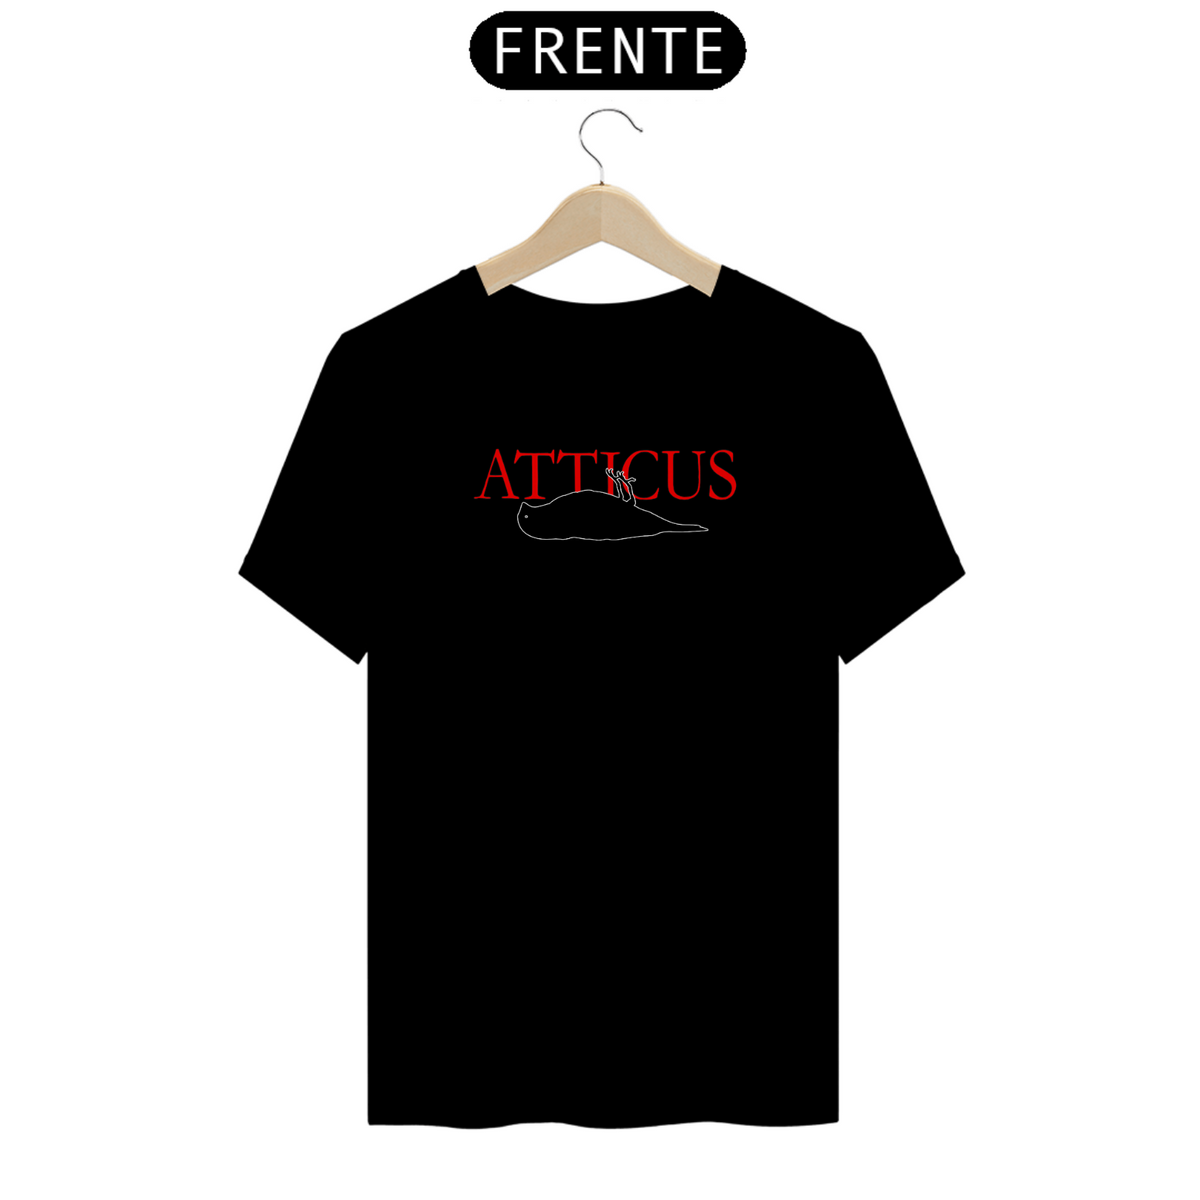 Nome do produto: Camiseta Atticus versão 2, Cores Variadas SUPER PROMOÇÂO